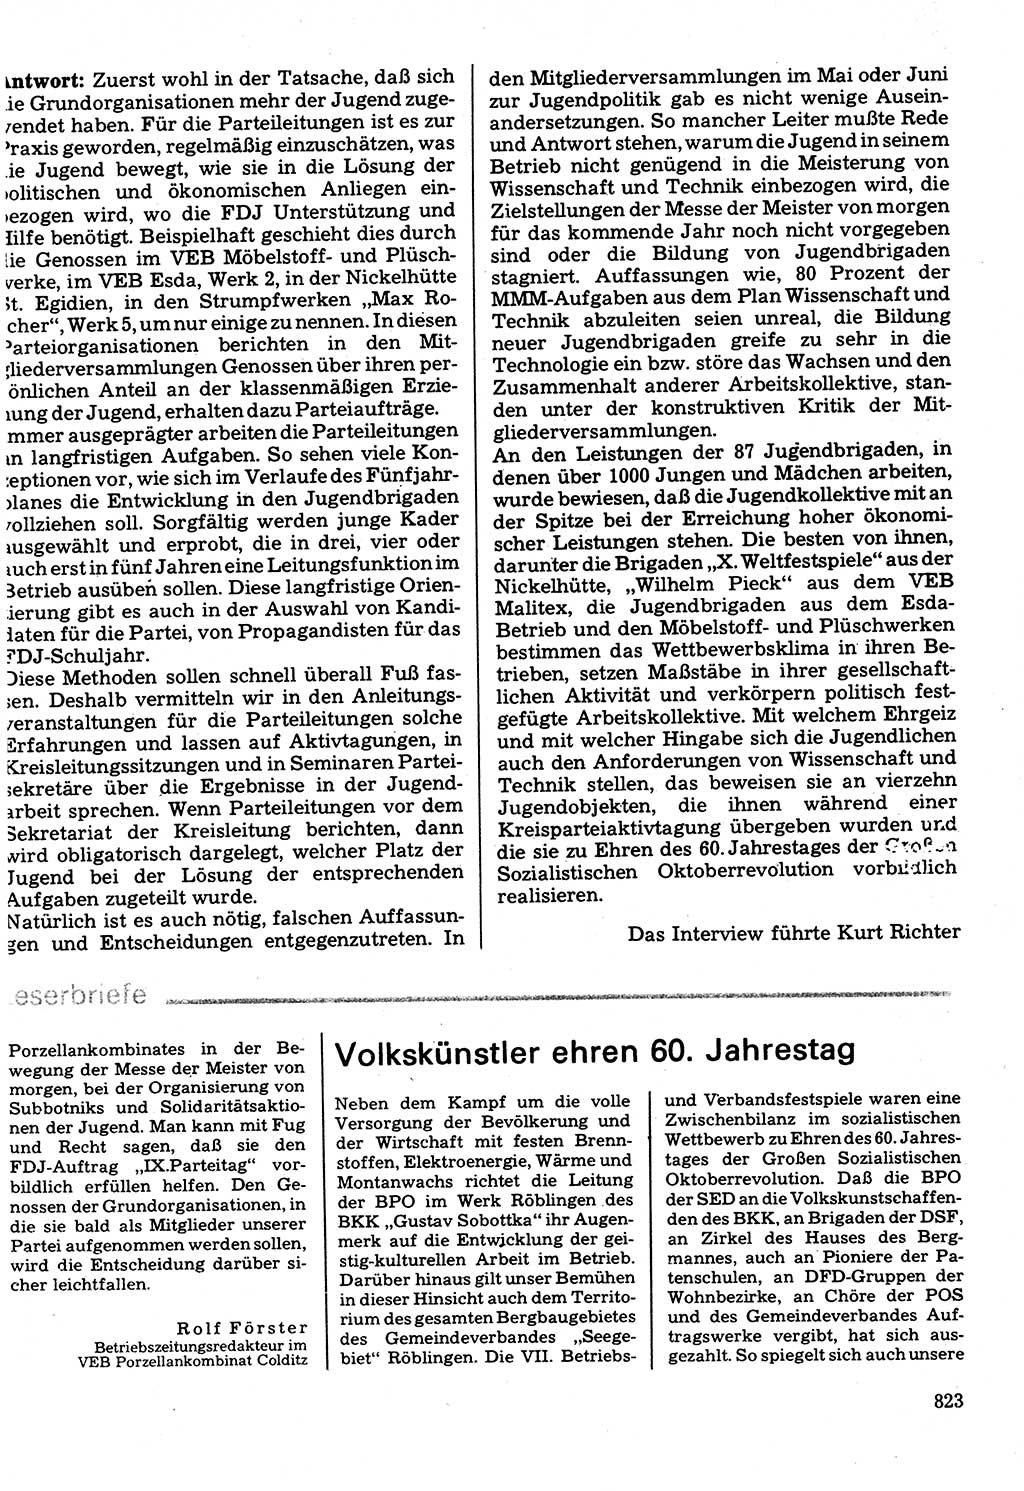 Neuer Weg (NW), Organ des Zentralkomitees (ZK) der SED (Sozialistische Einheitspartei Deutschlands) für Fragen des Parteilebens, 32. Jahrgang [Deutsche Demokratische Republik (DDR)] 1977, Seite 823 (NW ZK SED DDR 1977, S. 823)